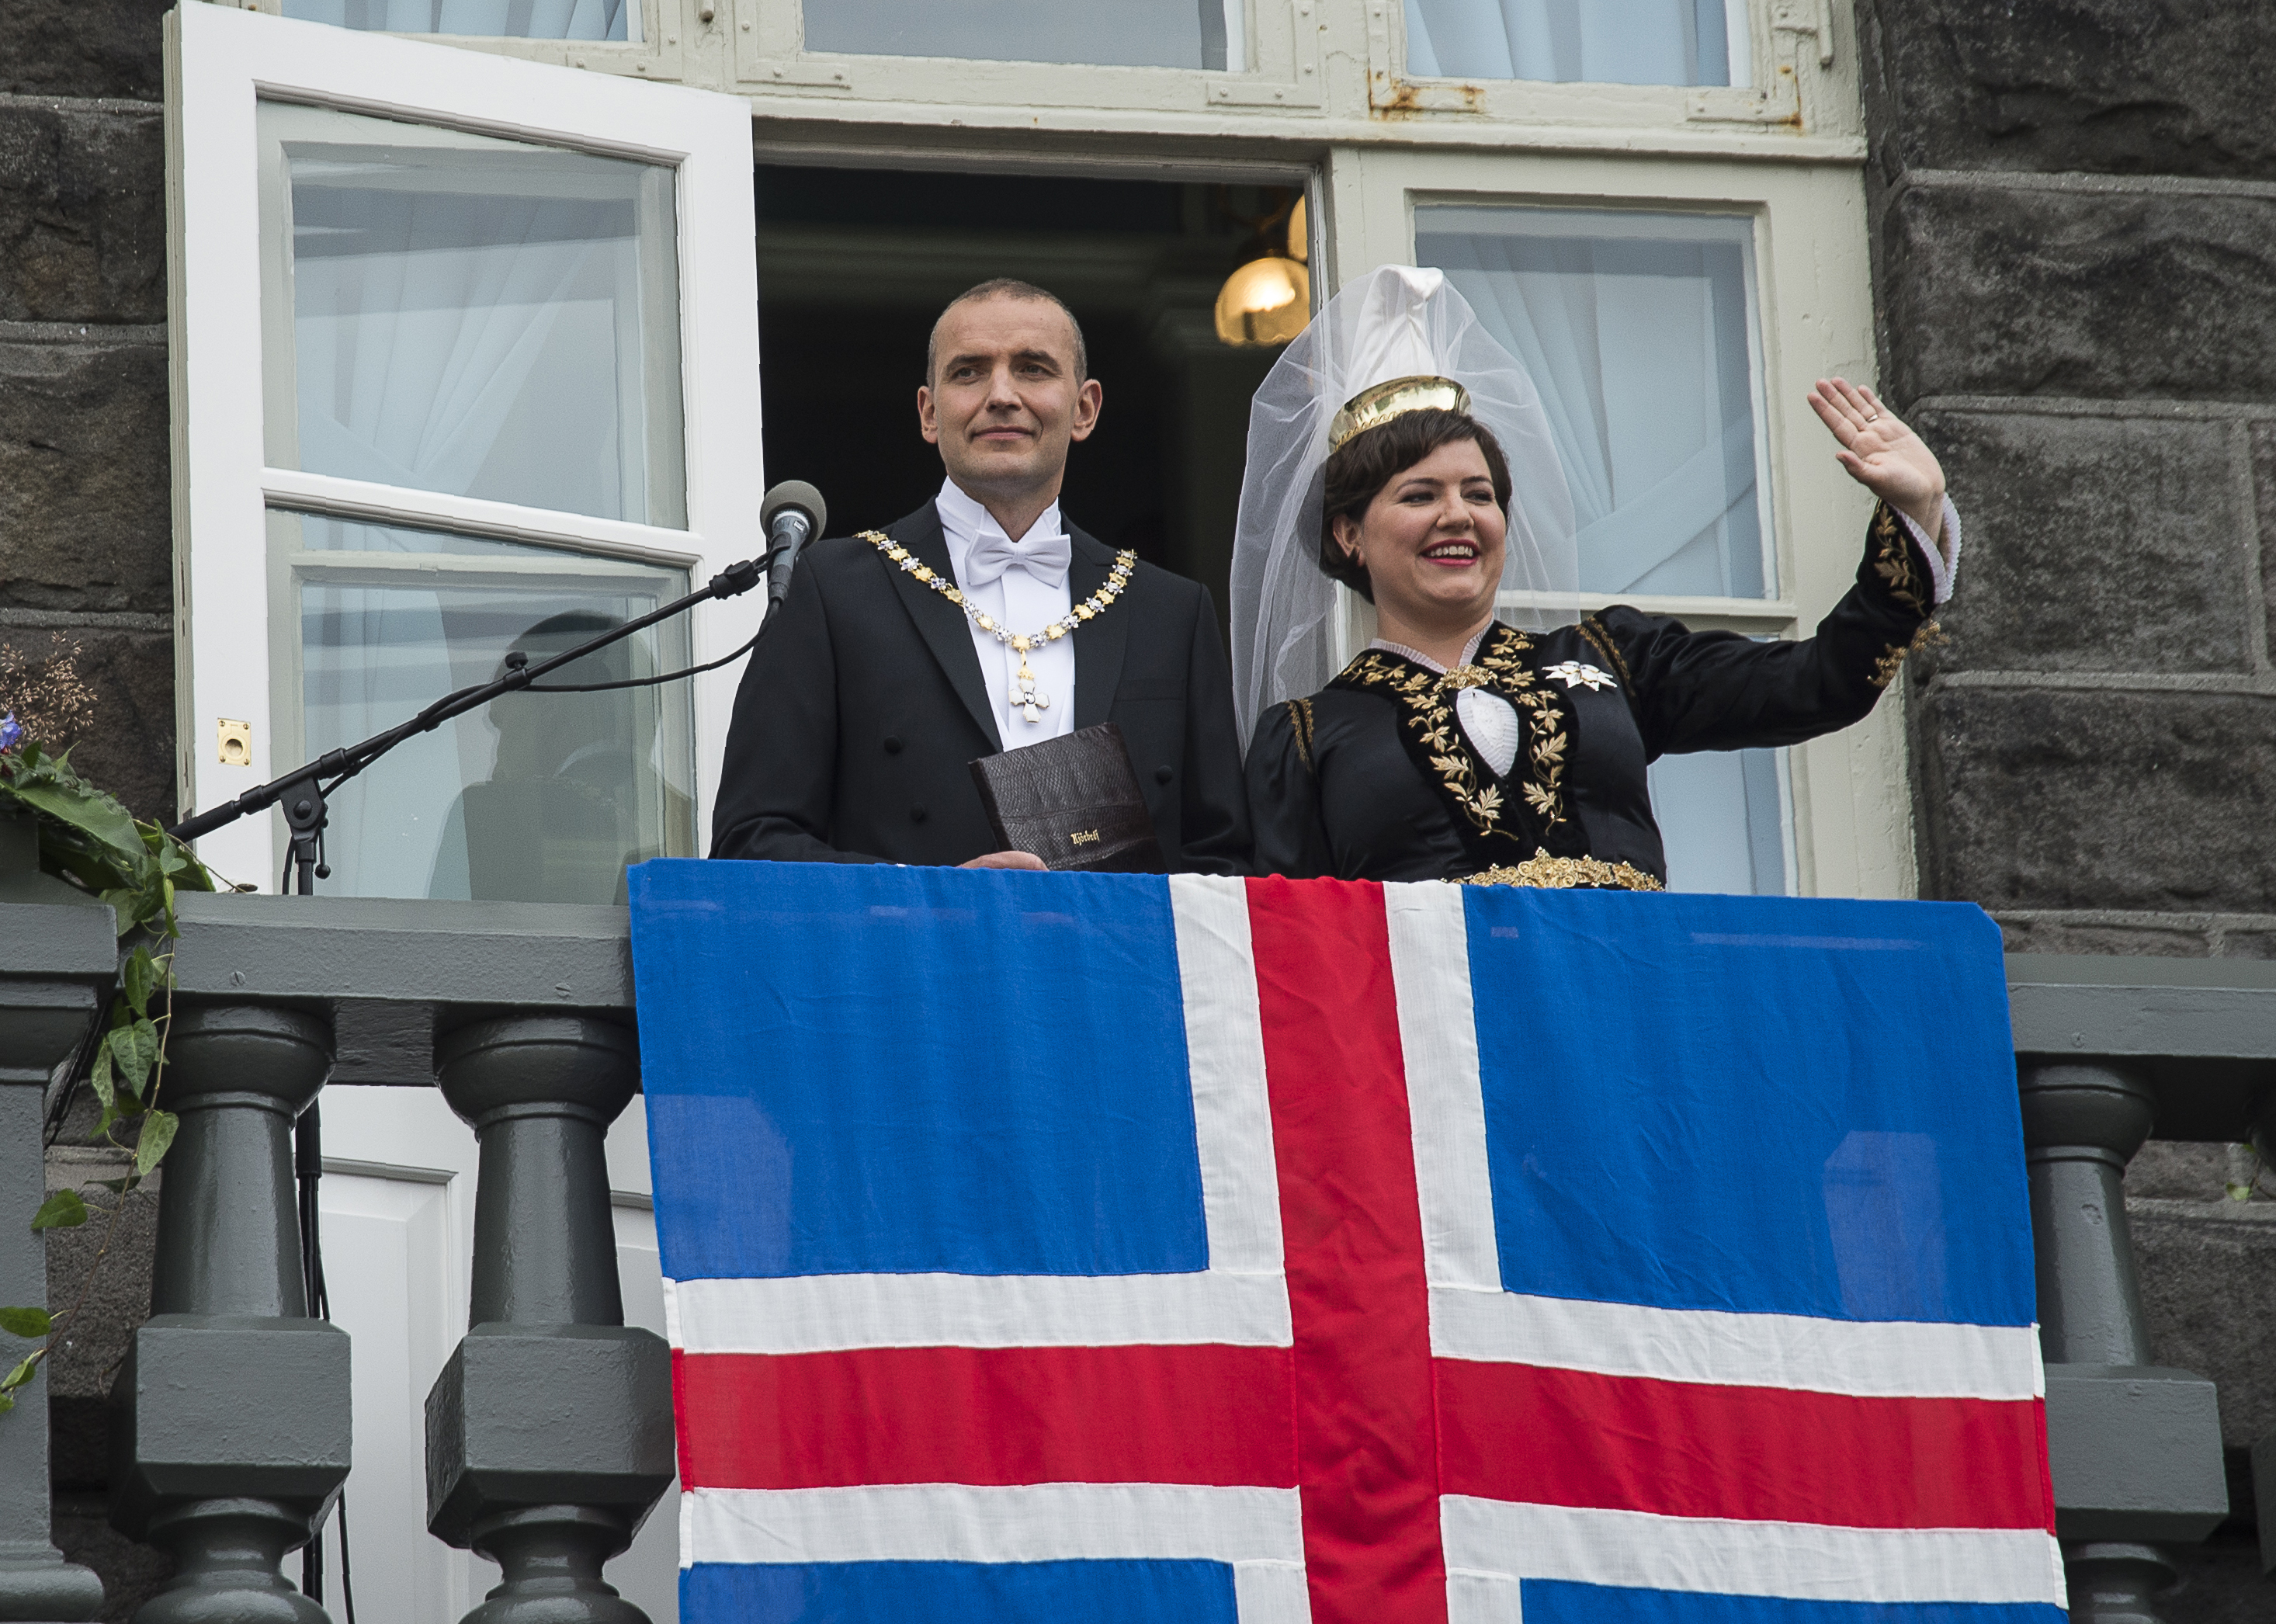 Az izlandi elnök nem fogadja el a fizetésemeléséét, a különbséget jótékony célra ajánlja fel